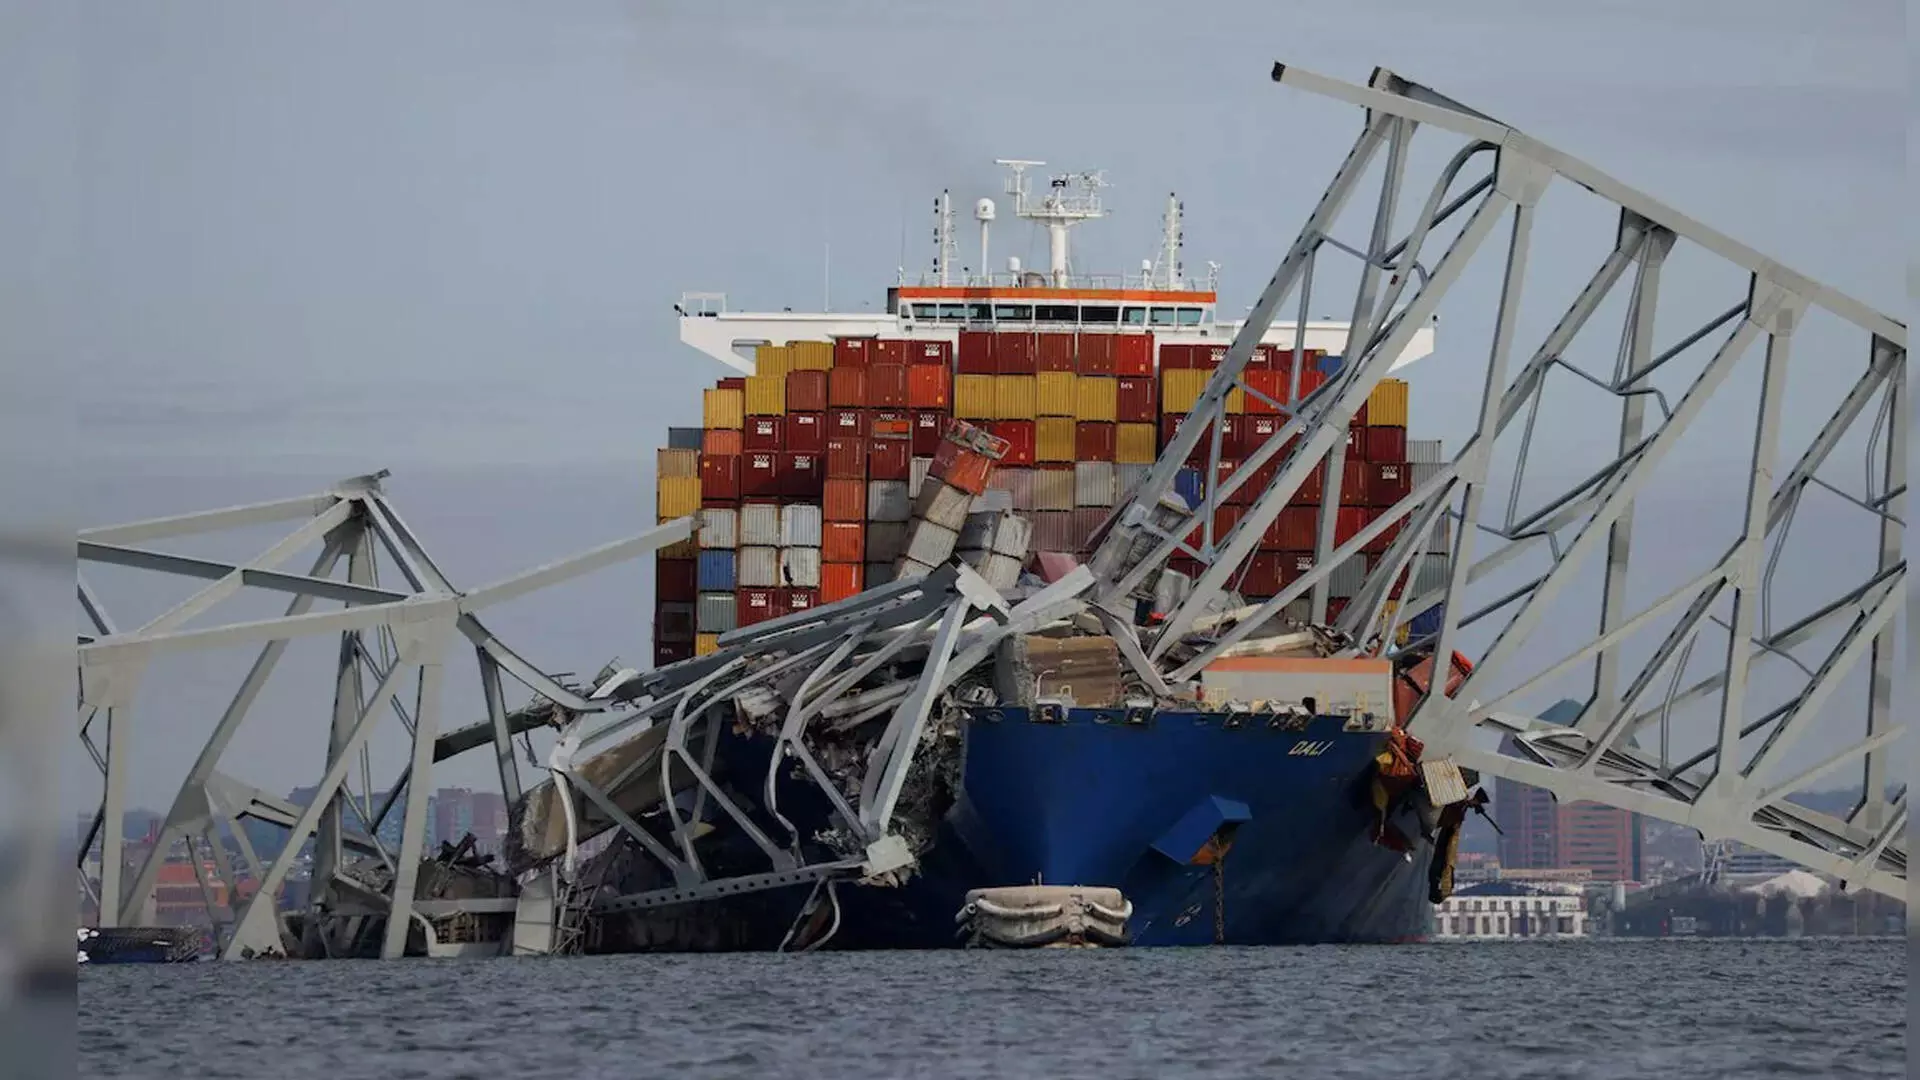 प्रस्थान के कुछ मिनट बाद, लड़खड़ाता कंटेनर जहाज अमेरिकी पुल से टकरा गया: वीडियो